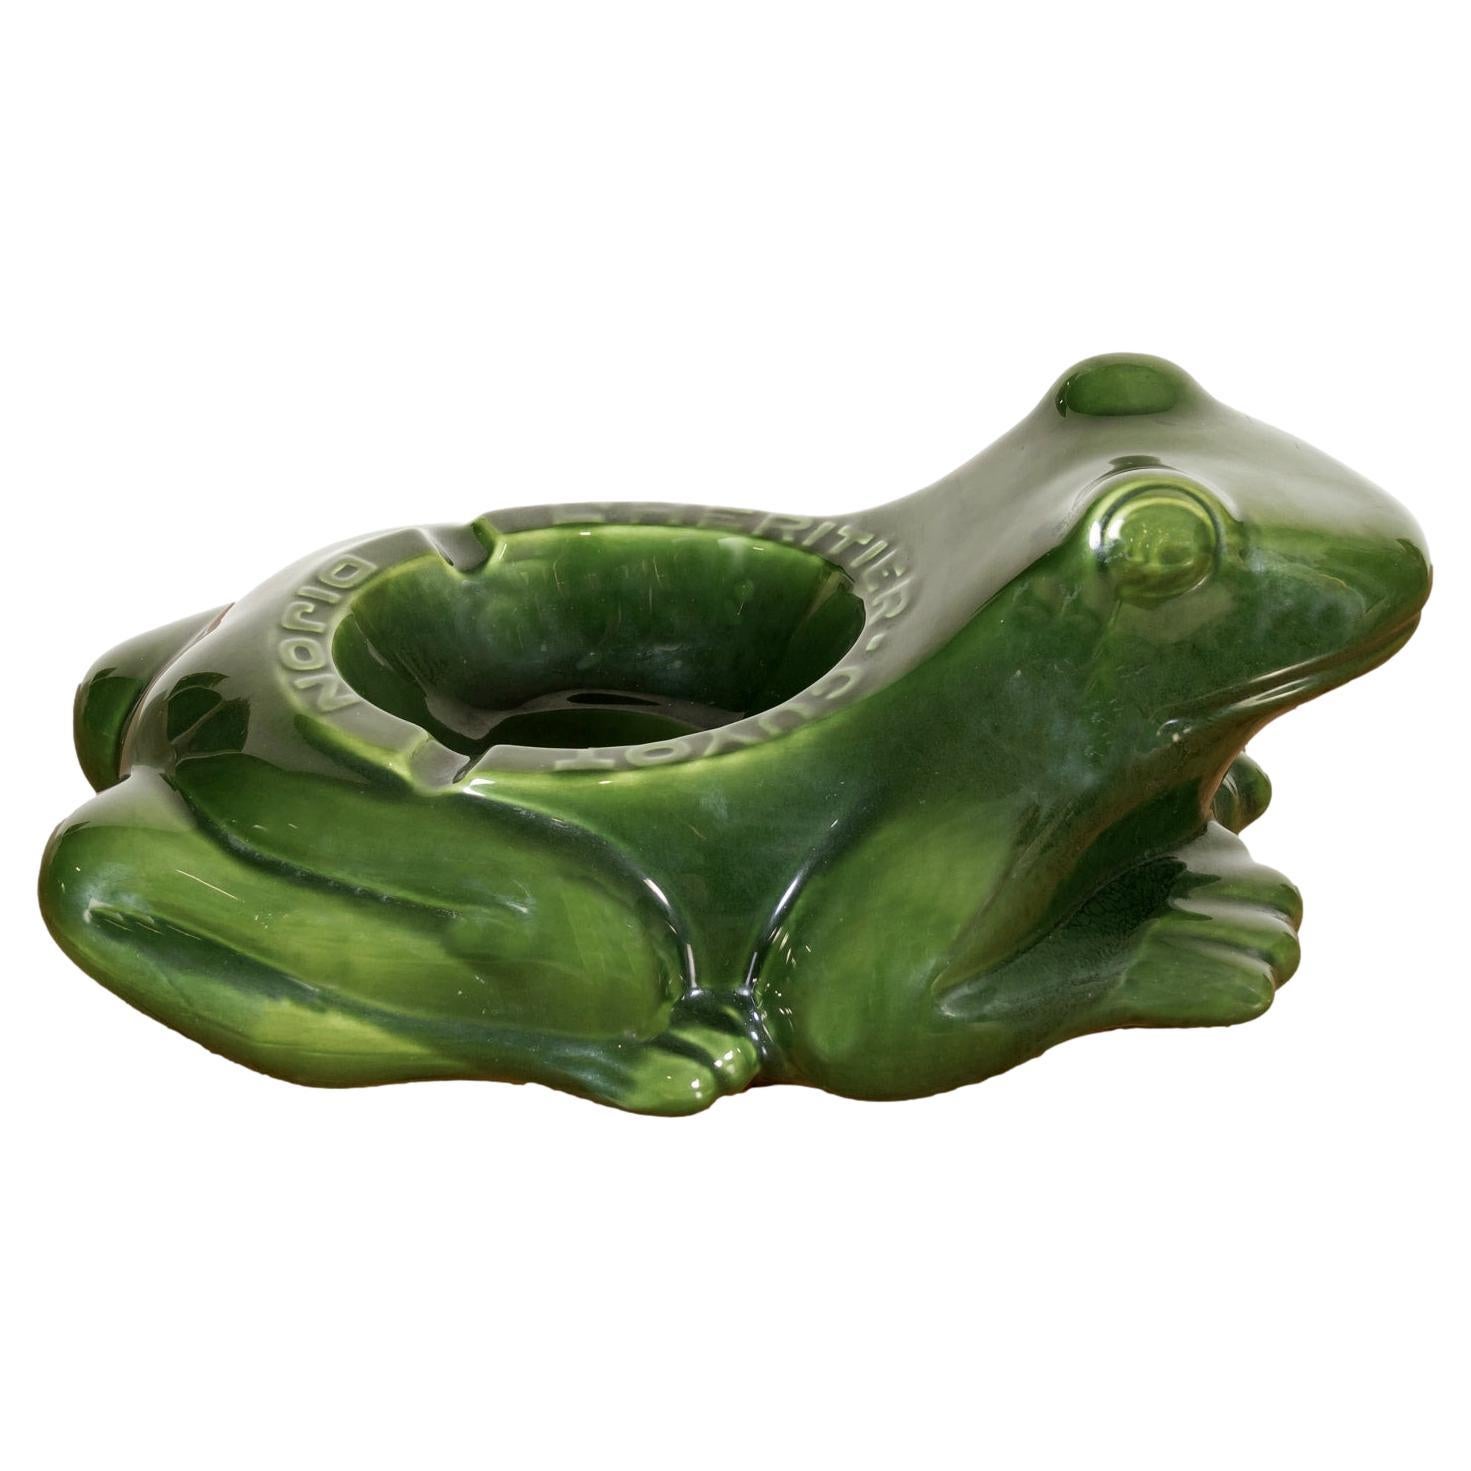 Grand cendrier vintage français L'HERITIER GUYOT DIJON avec grenouille en céramique verte